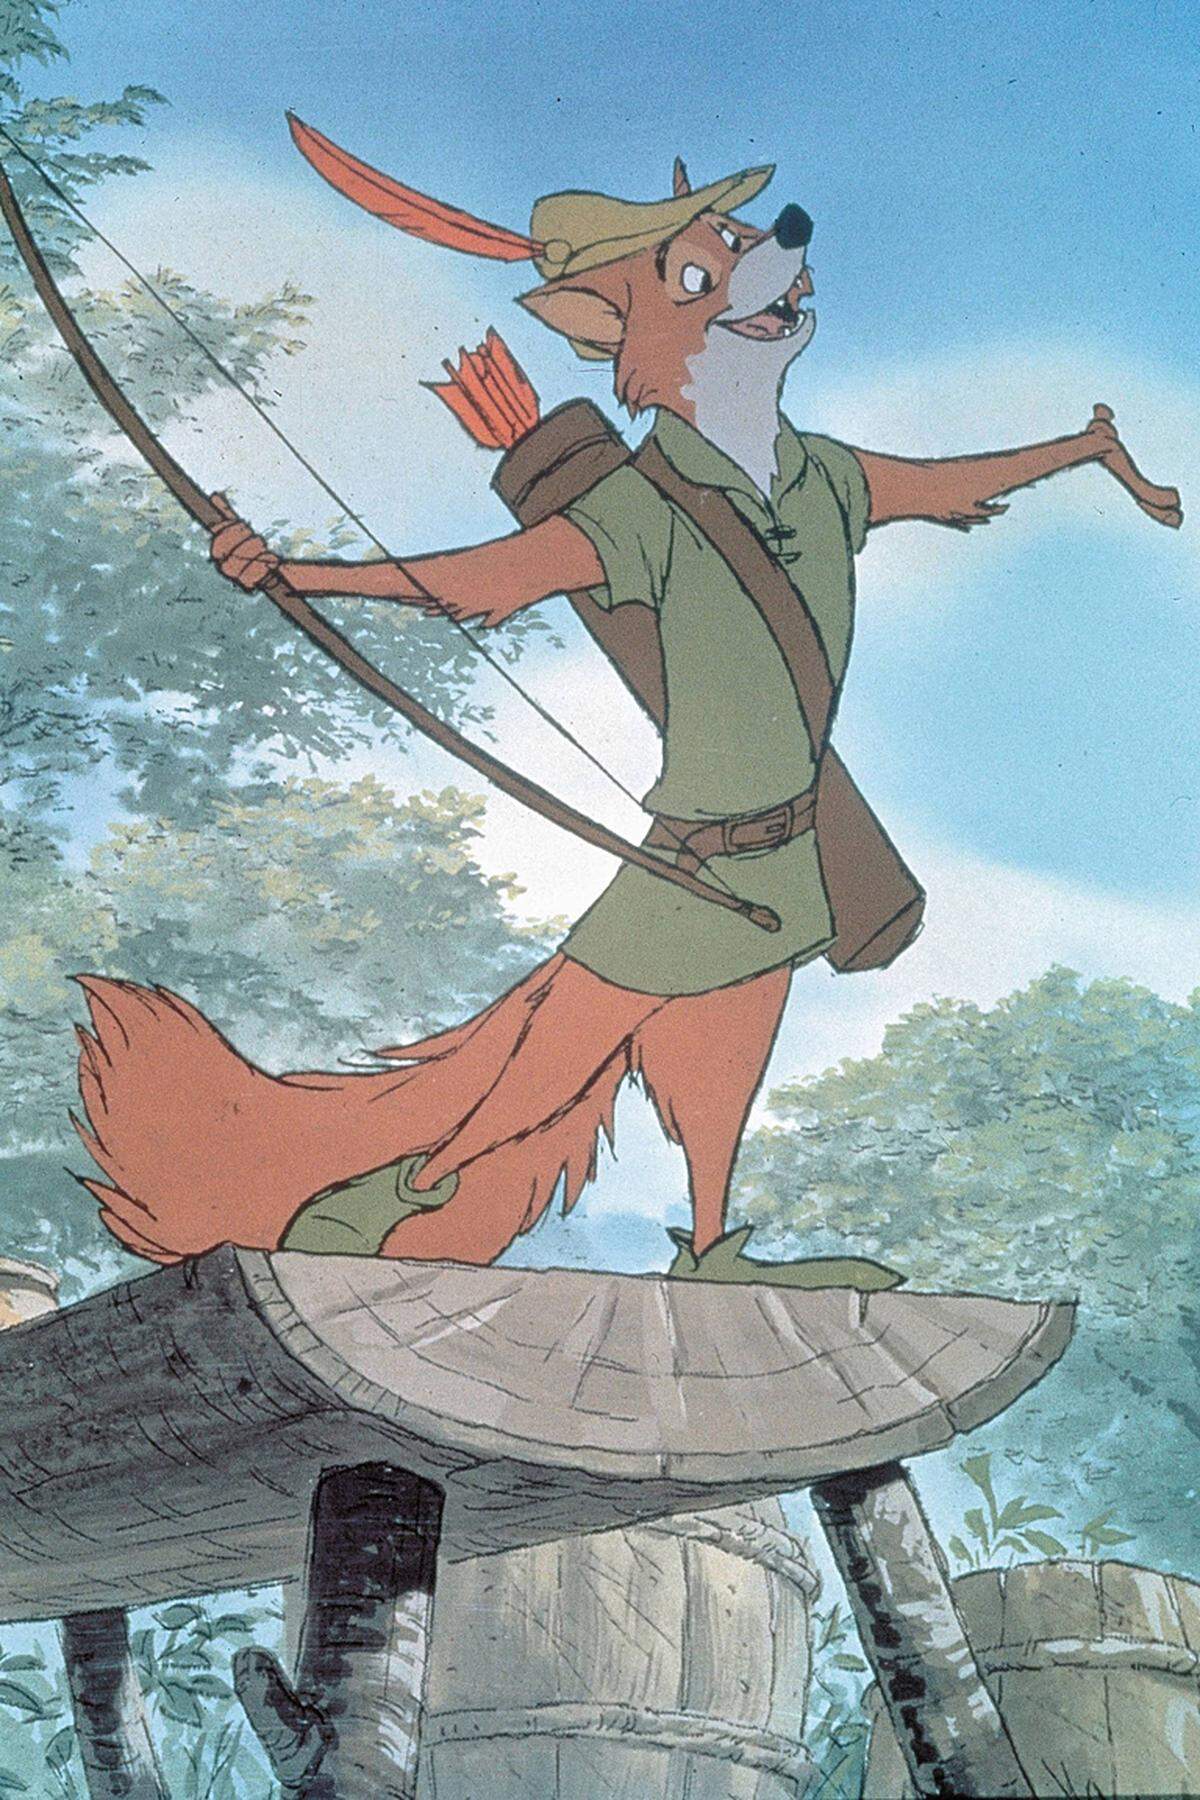 Der Volksheld, ein diebischer Kämpfer für soziale Gerechtigkeit, ist ein dankbarer Held - so auch für Disney. An diesem Film zeigt sich die Vorliebe des Filmstudios fürs Recyceln: die Tanzszene mit Little John (ein Bär) deckt sich mit der zwischen Balu dem Bären und dem Affen King Louie aus dem "Dschungelbuch". Den Tanz von Robin und Marian ähnelt jenem aus "Schneewittchen". Insgesamt ist "Robin Hood" aber lustiger als die Disney-Vorgängerfilme.